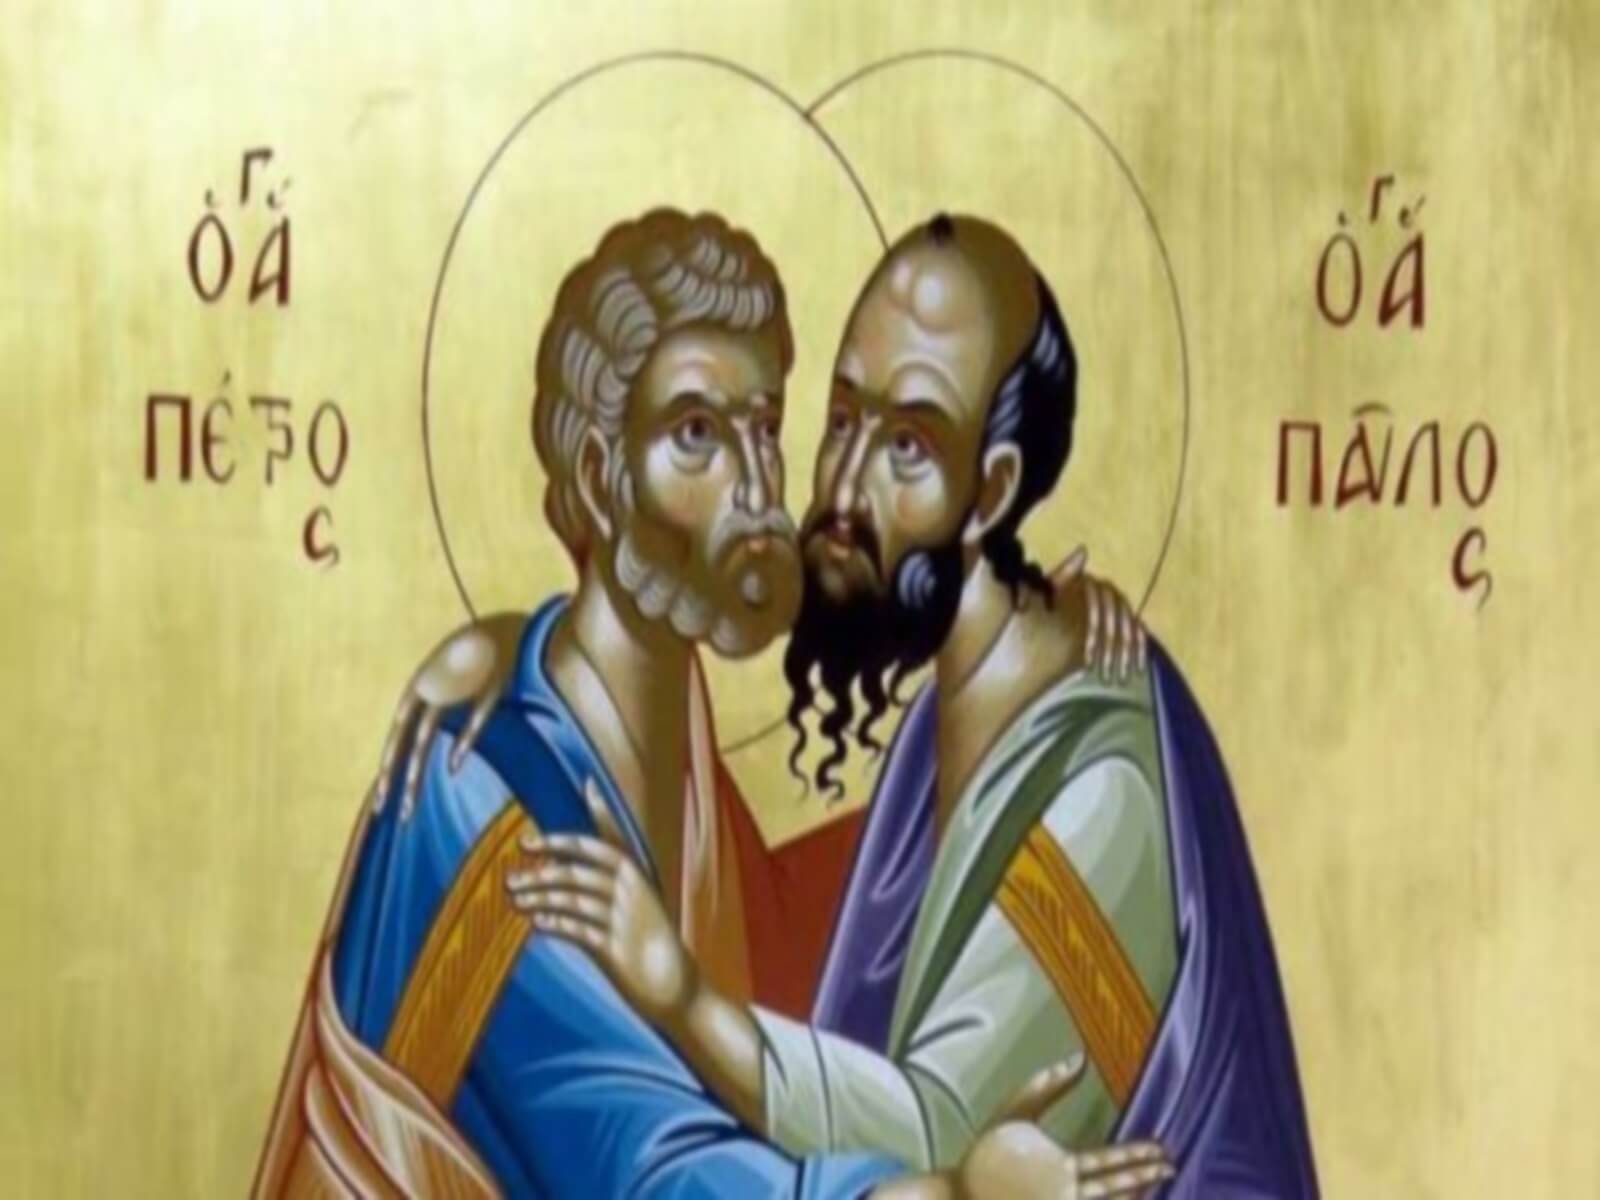 Σήμερα η Εκκλησία μας τιμά τη μνήμη των Αποστόλων Πέτρου και Παύλου – Ποιοι ήταν και γιατί γιορτάζουν μαζί;